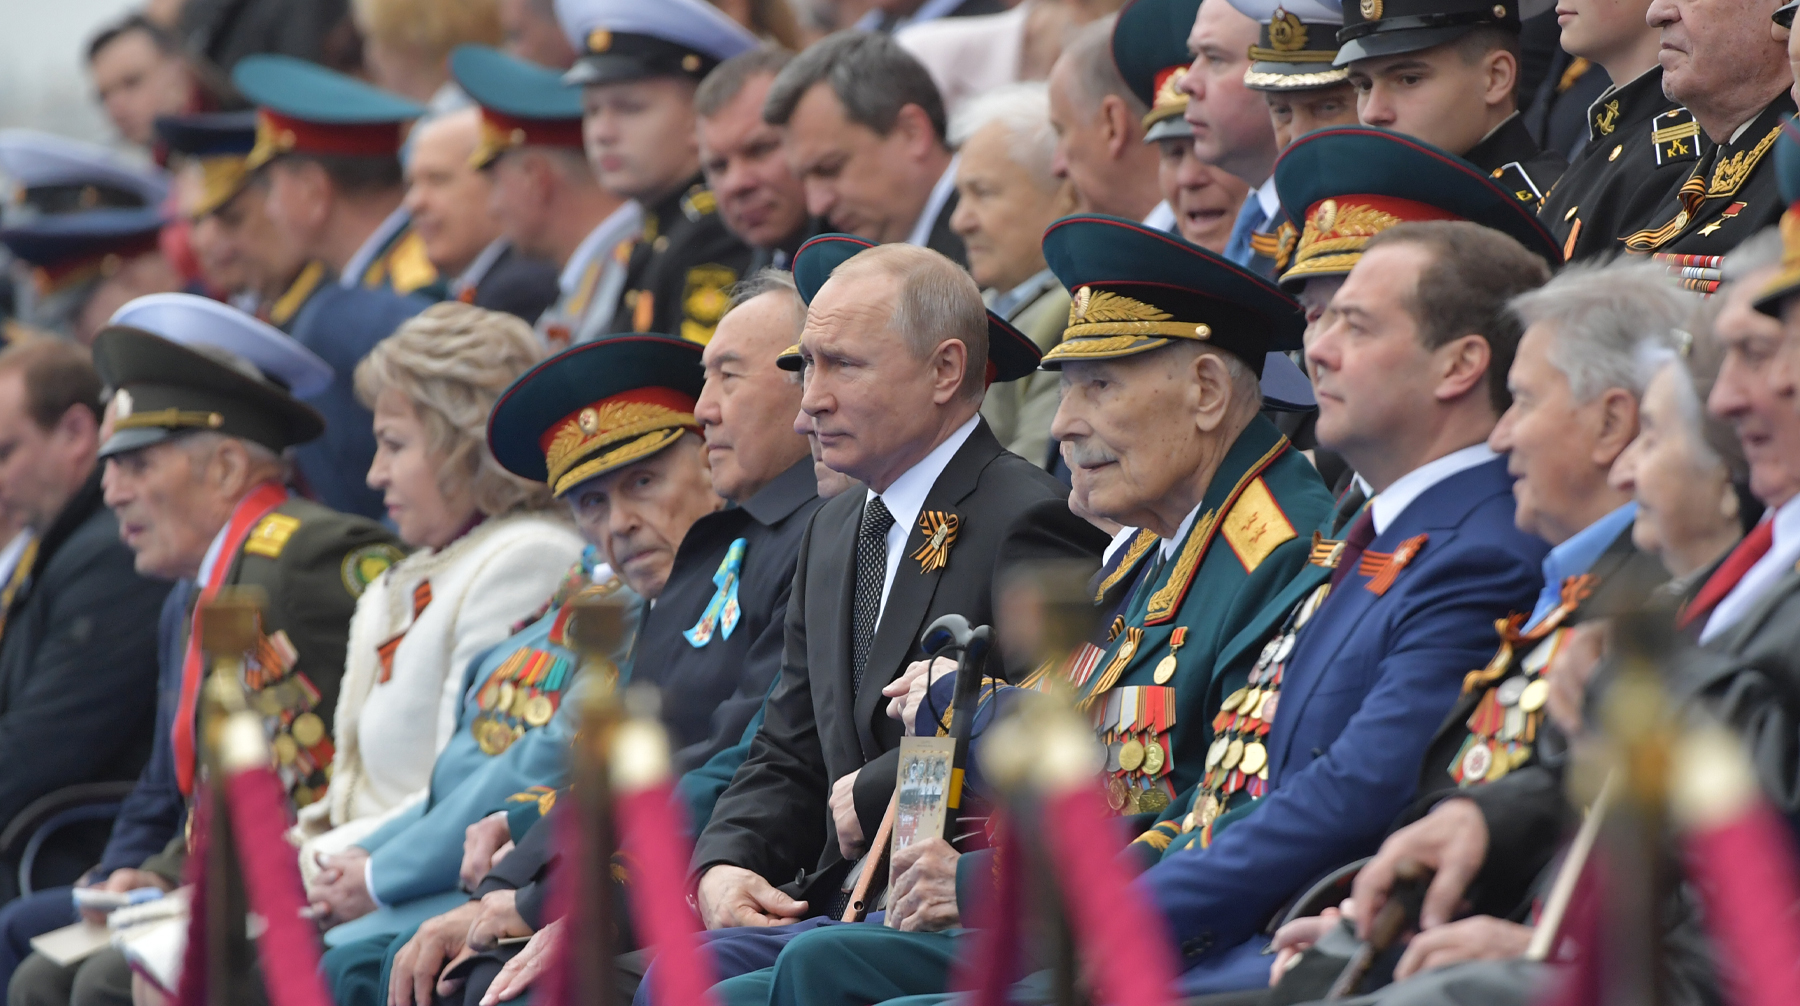 Глава государства отметил, что подумает, каким образом сможет принять участие в акции Фото: © Global Look Press / Komsomolskaya Pravda